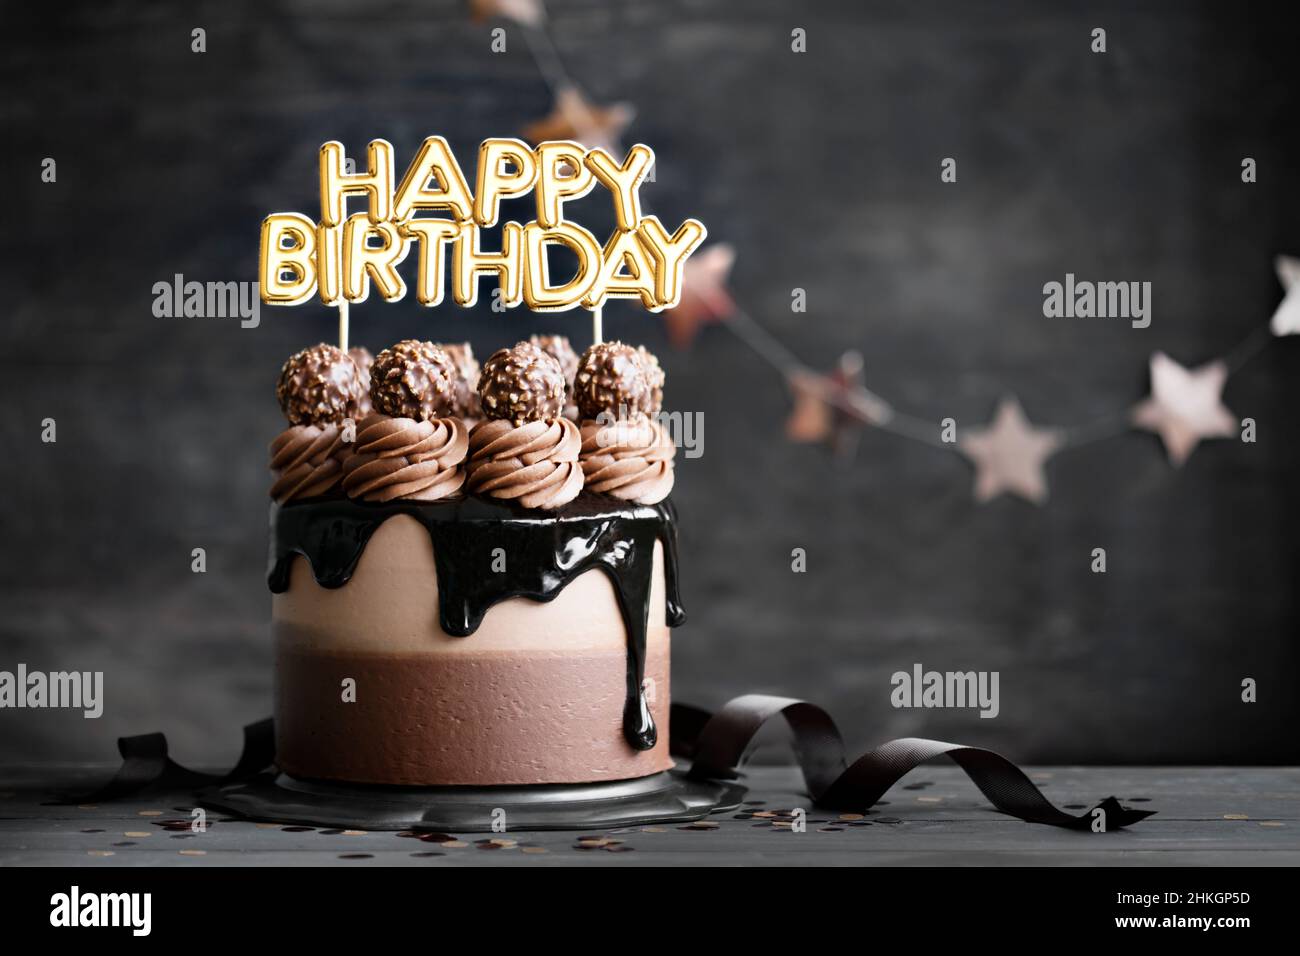 Torta di compleanno al cioccolato con glassa di ganache al cioccolato e banner di buon compleanno Foto Stock